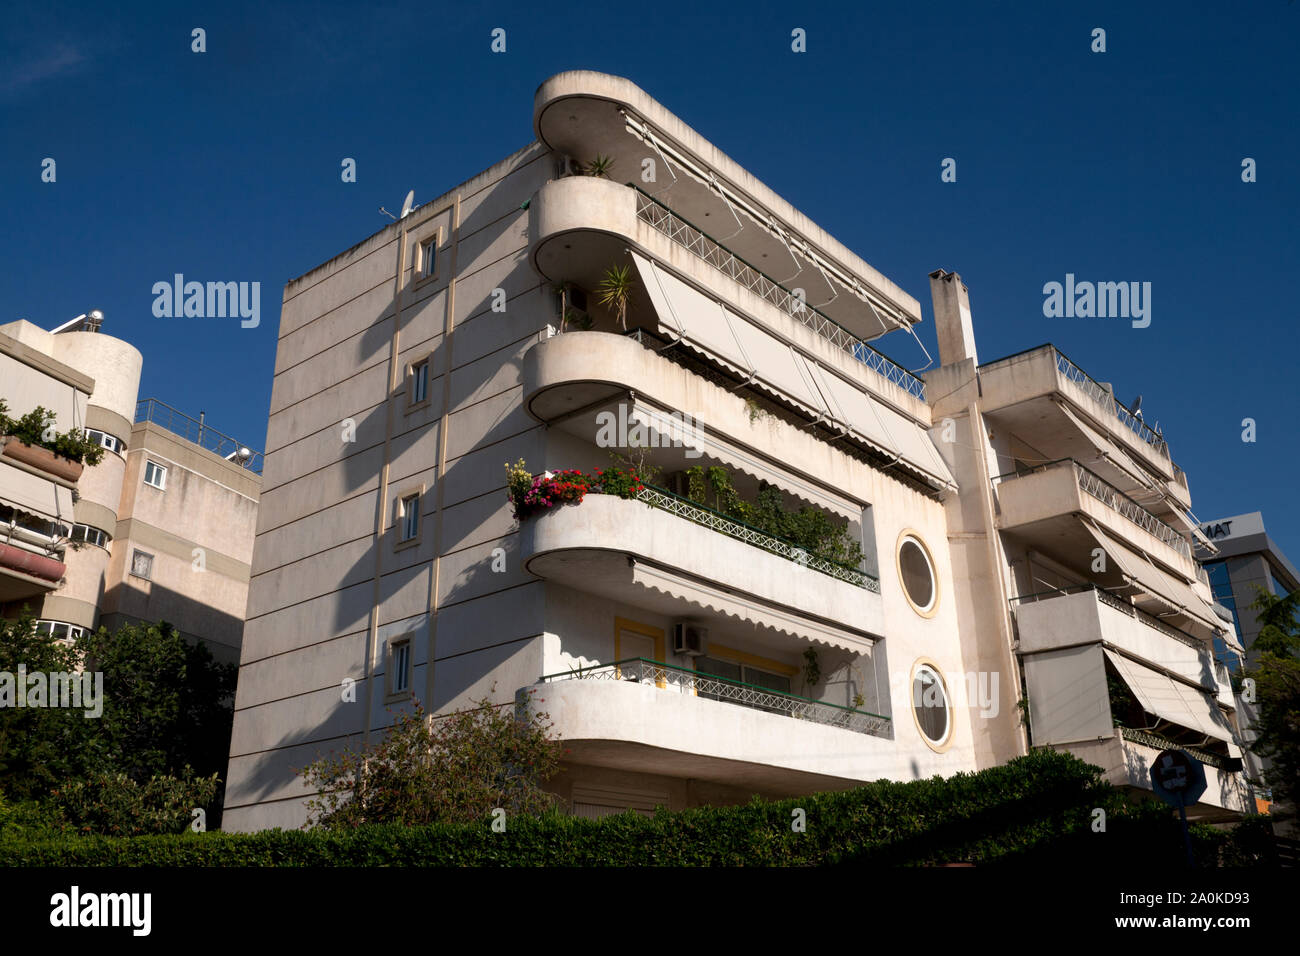 Les immeubles à appartements avenue vouliagmeni athens Attica Grèce Banque D'Images